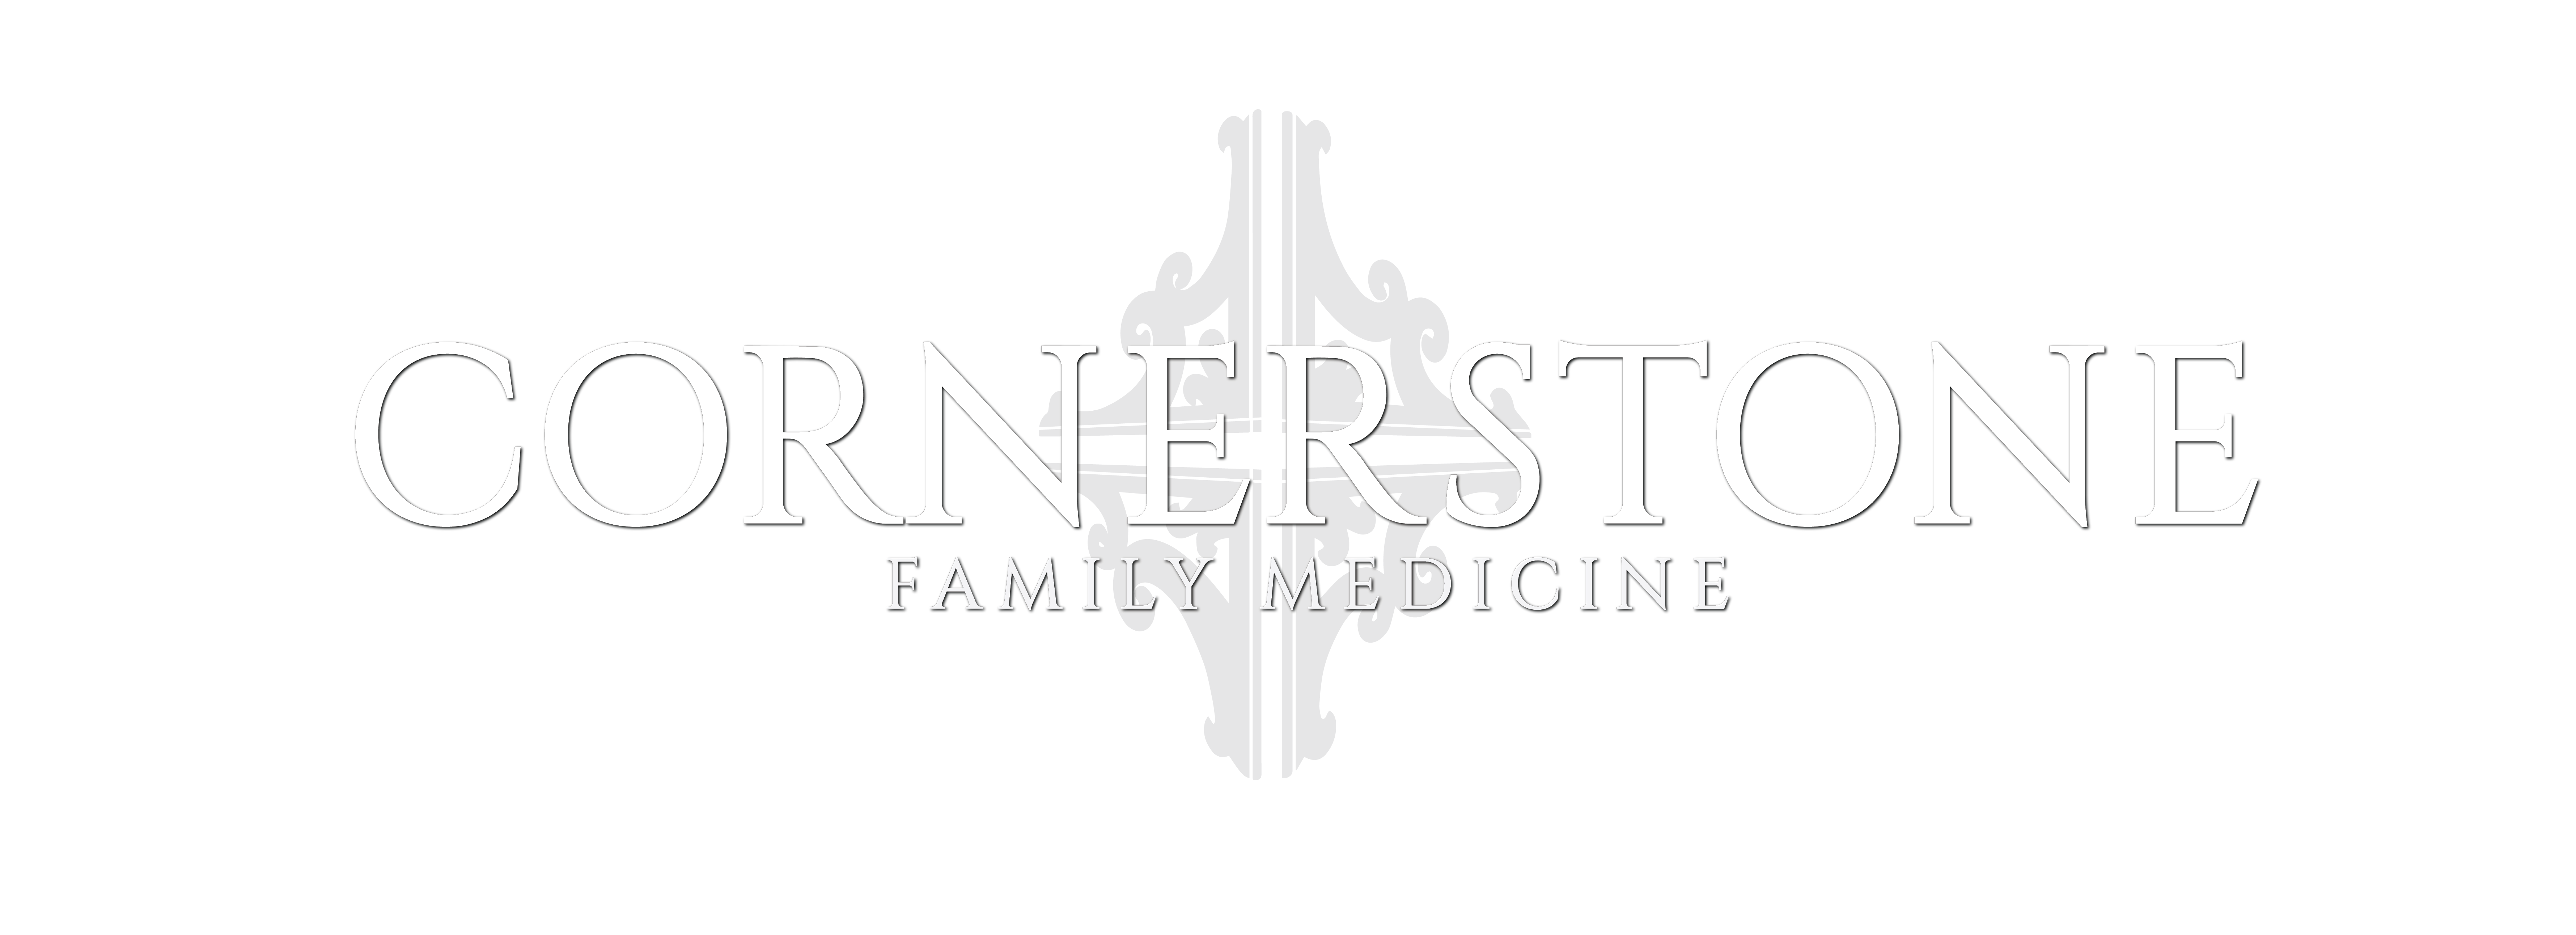 Cornerstone Family Medicine